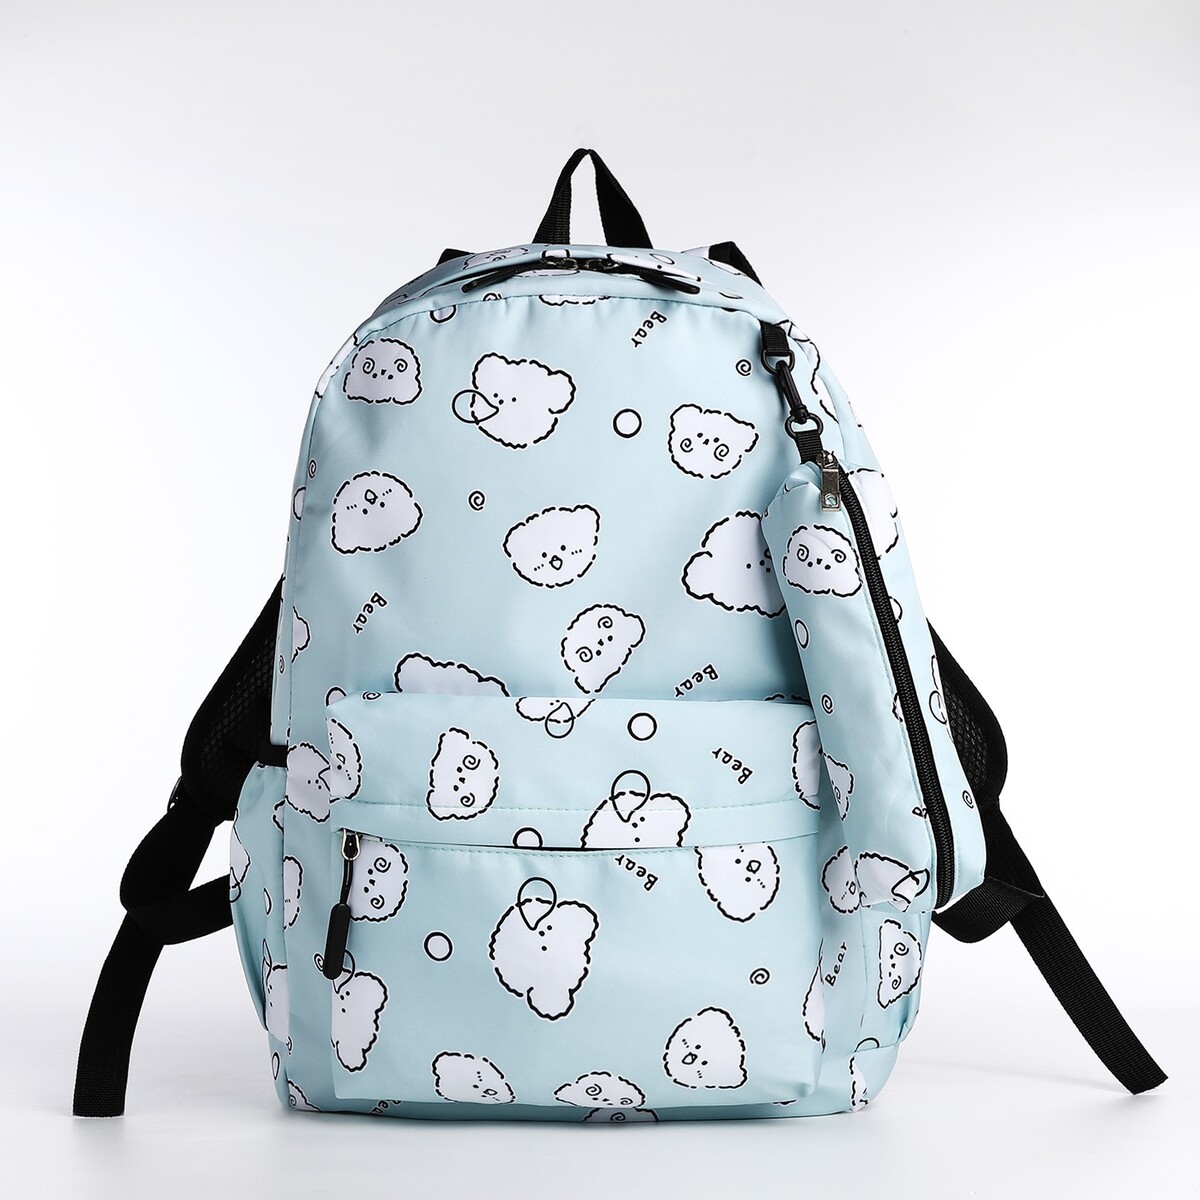 Набор рюкзак школьный из текстиля на молнии, 3 кармана, пенал, цвет бирюзовый рюкзак школьный из текстиля на молнии 3 кармана бирюзовый